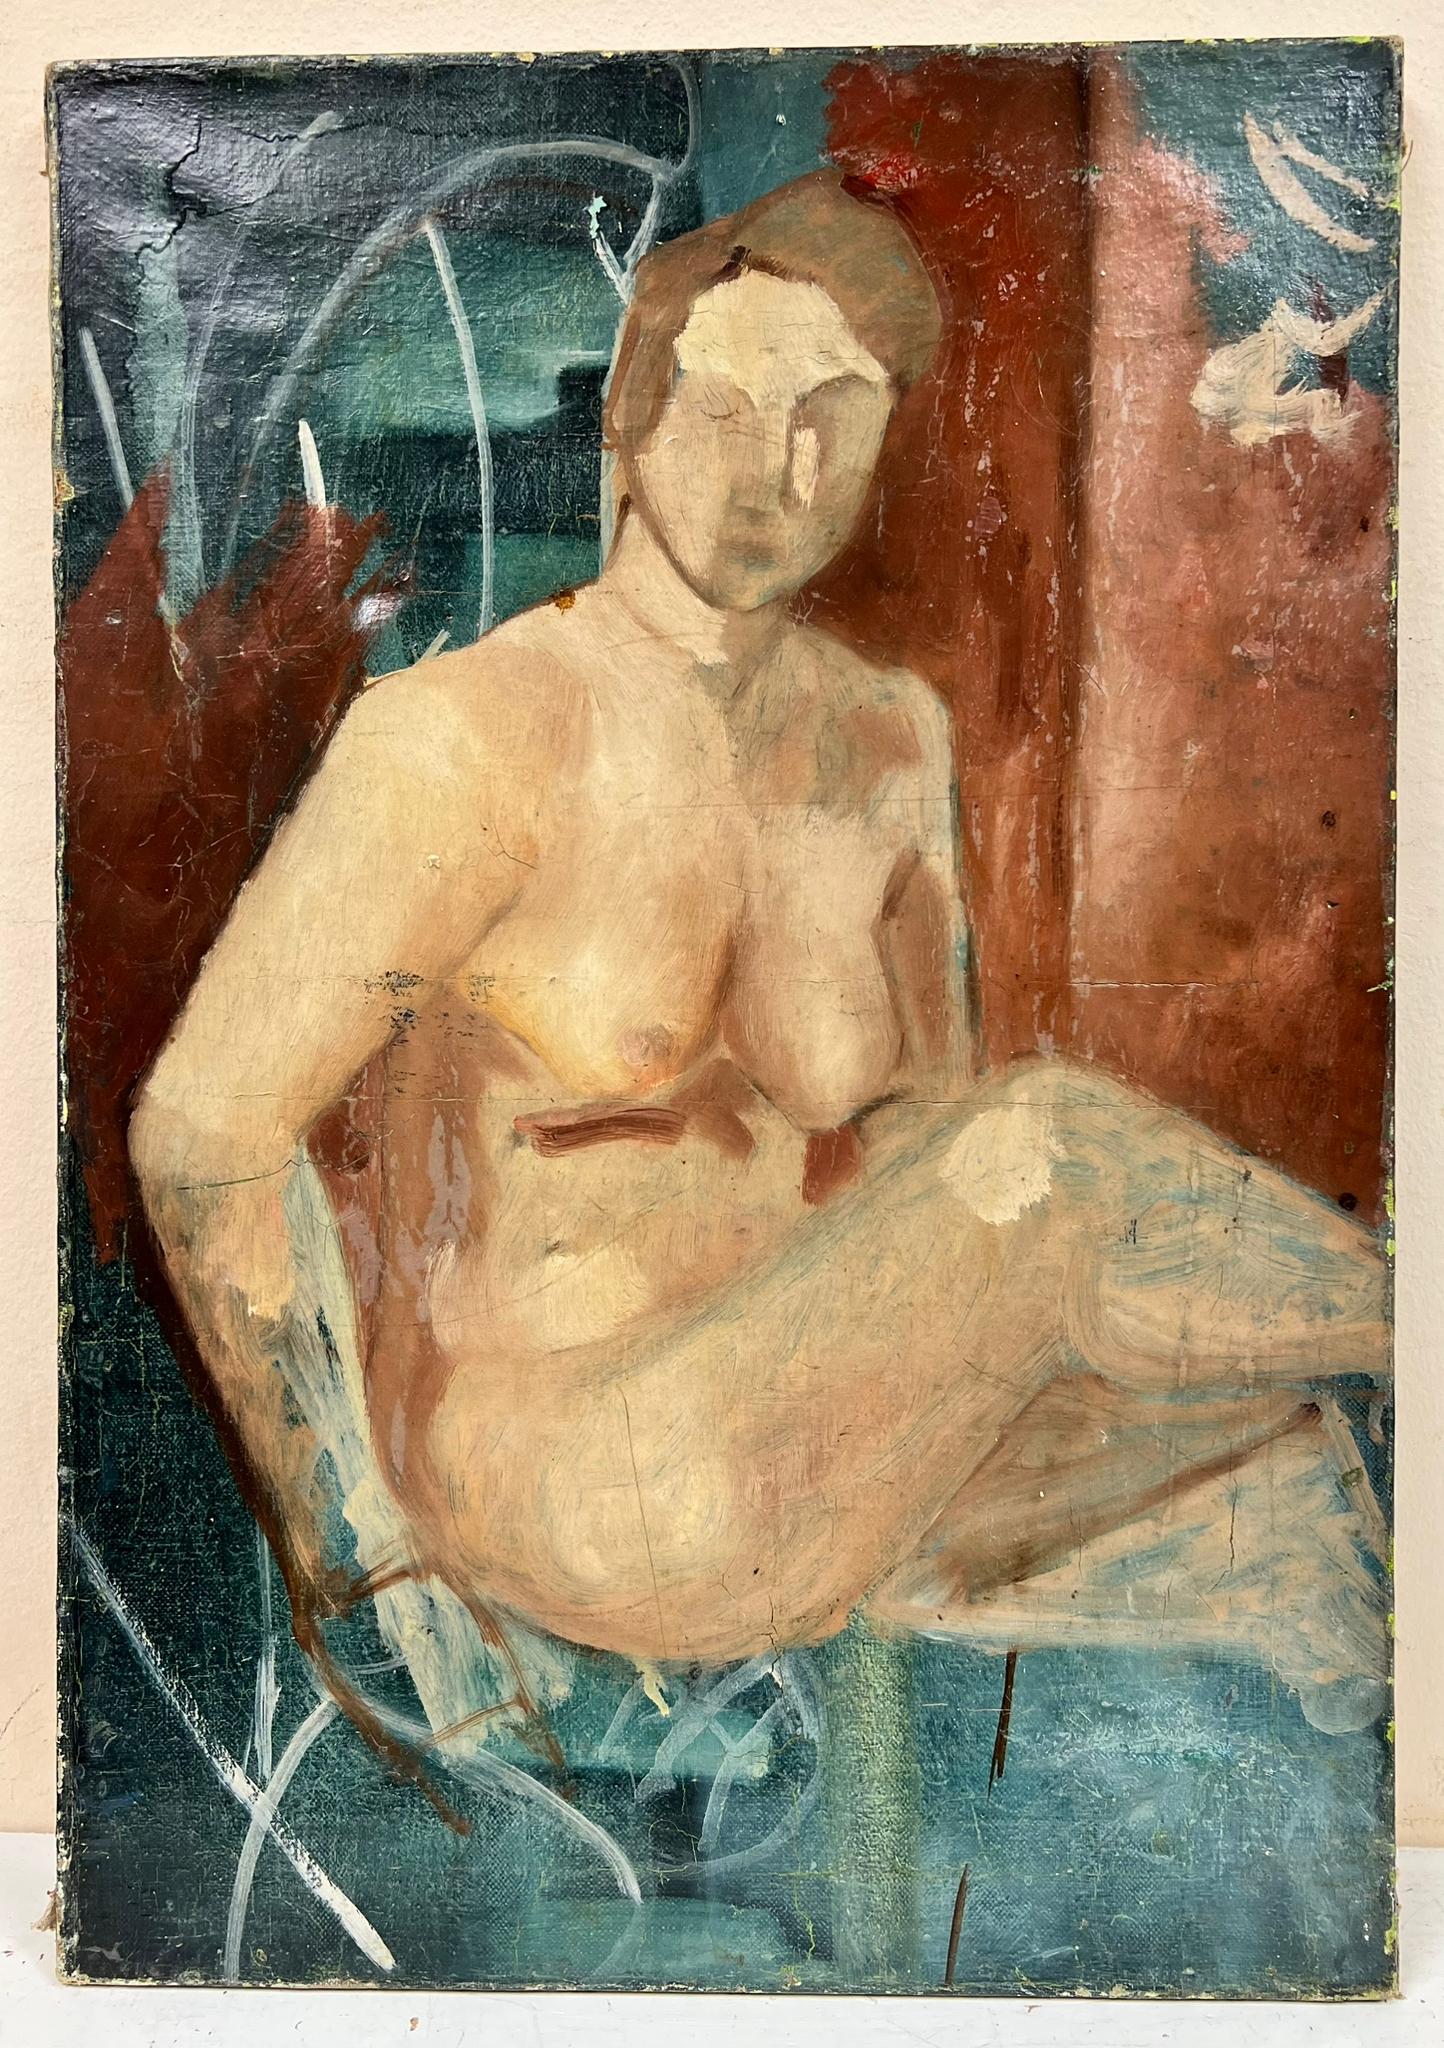 Französisches modernistisches Ölporträt einer nackten Dame in abstrakter Umgebung, 1930er Jahre – Painting von 1930's French